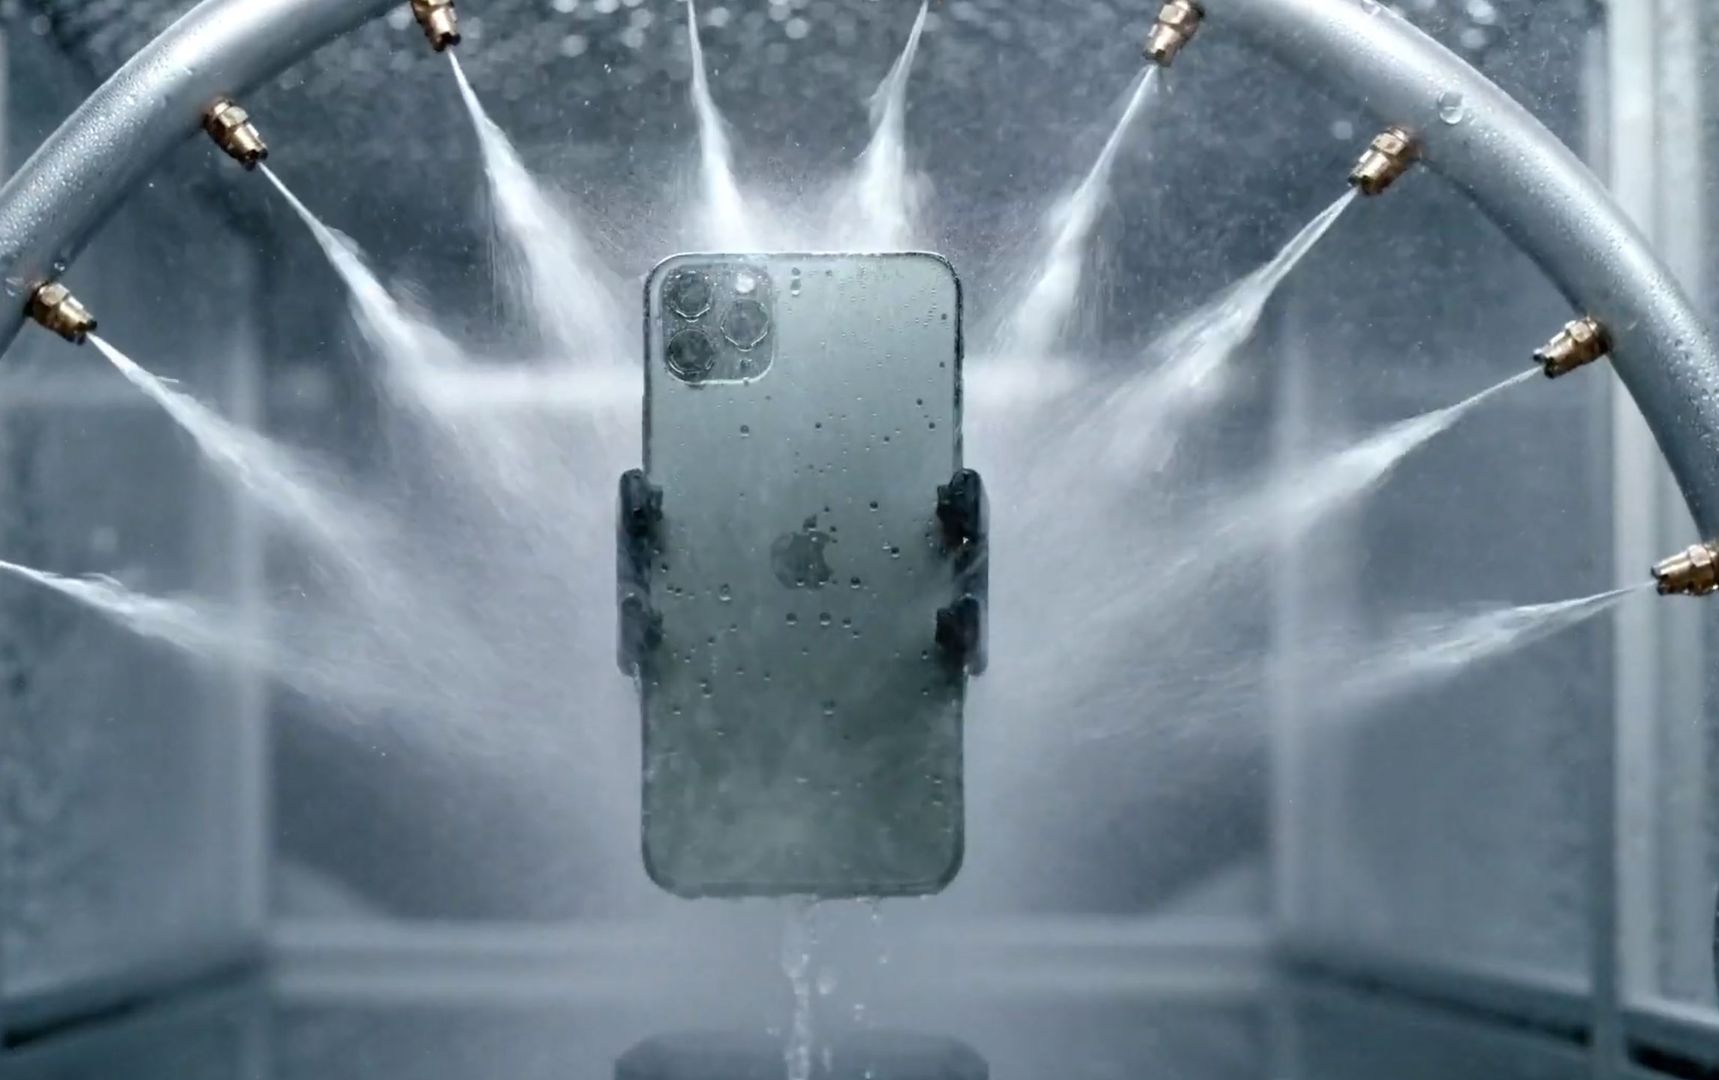 Oto iPhone 11 - najnowszy smartfon od Apple